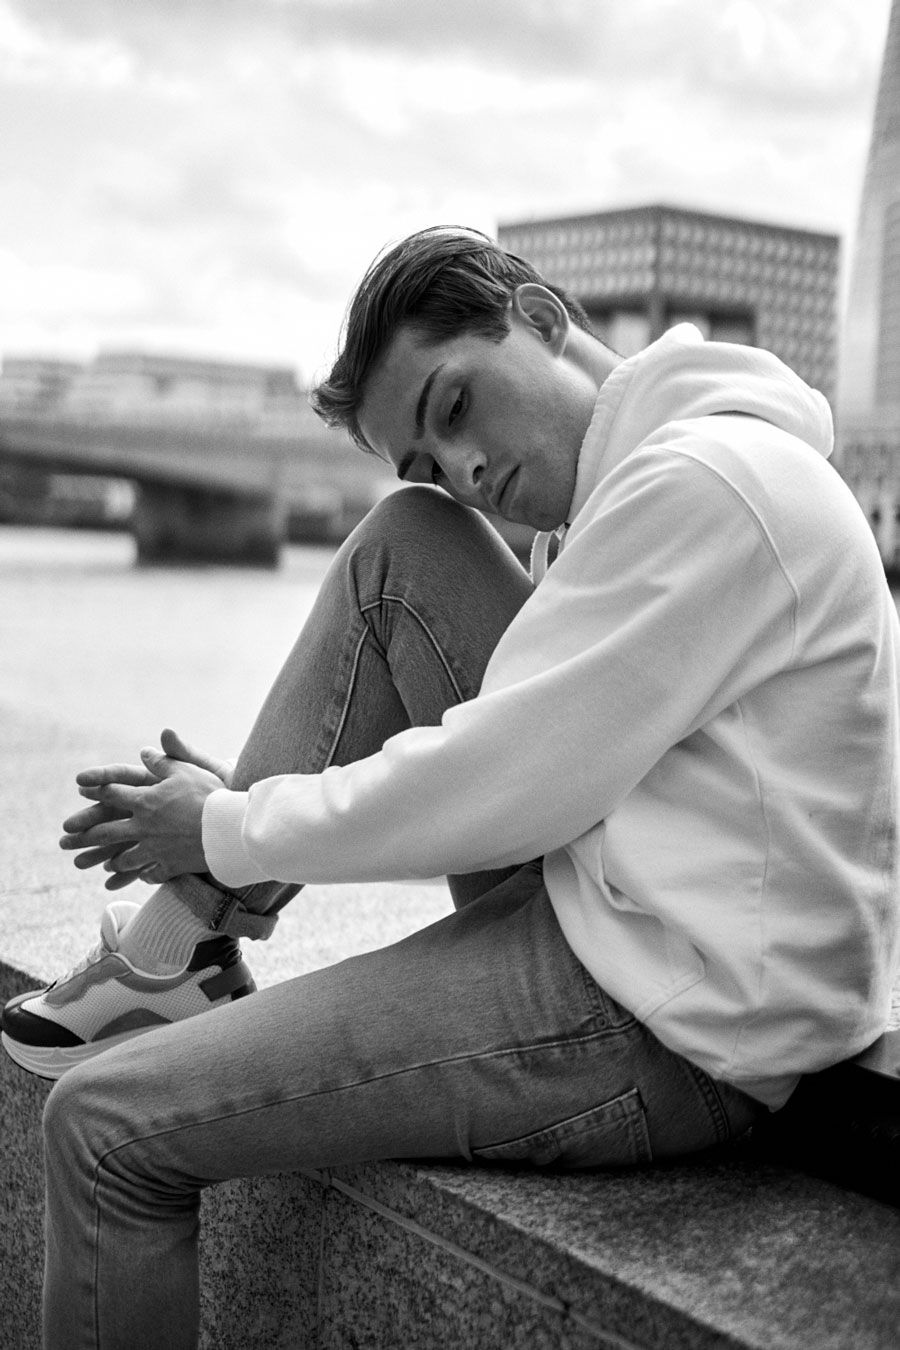 Hoodie und Sneaker Outfit | The Shard London | Shirtinator | Levis Jeans | schwarz weiß Fotografie | Portrait | Matthias Limmer | 11